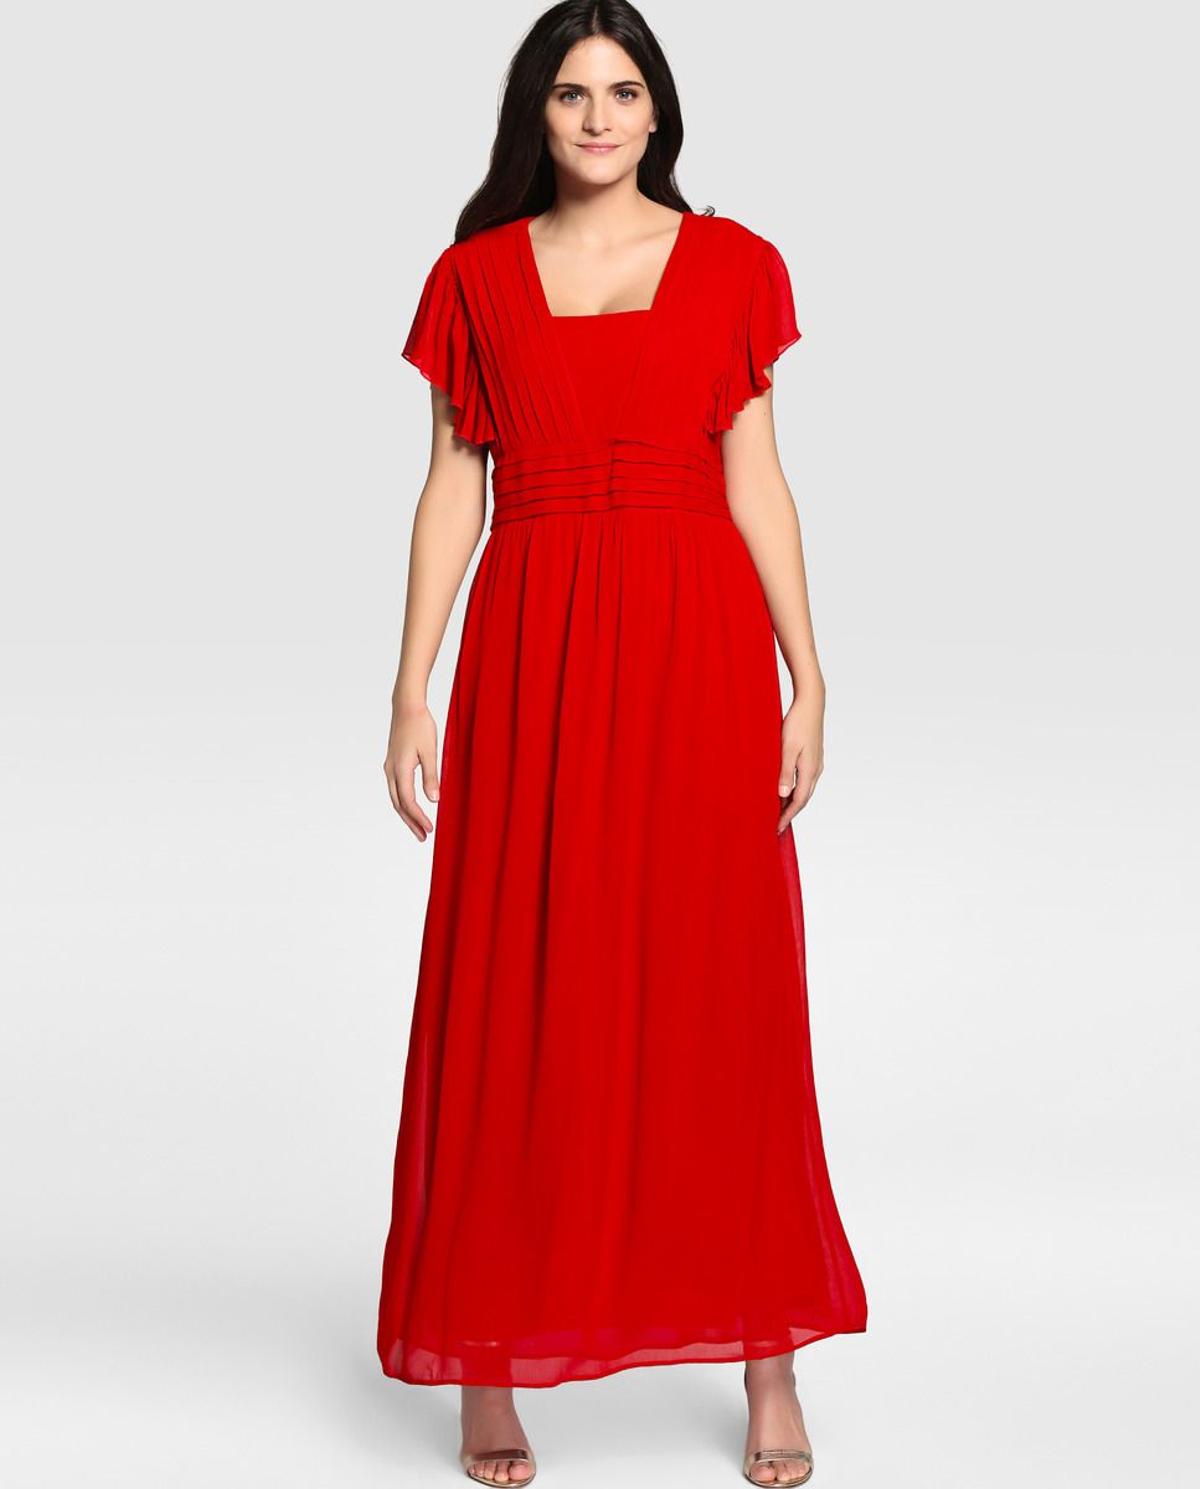 Vestidos para invitada curvy: vestido largo rojo